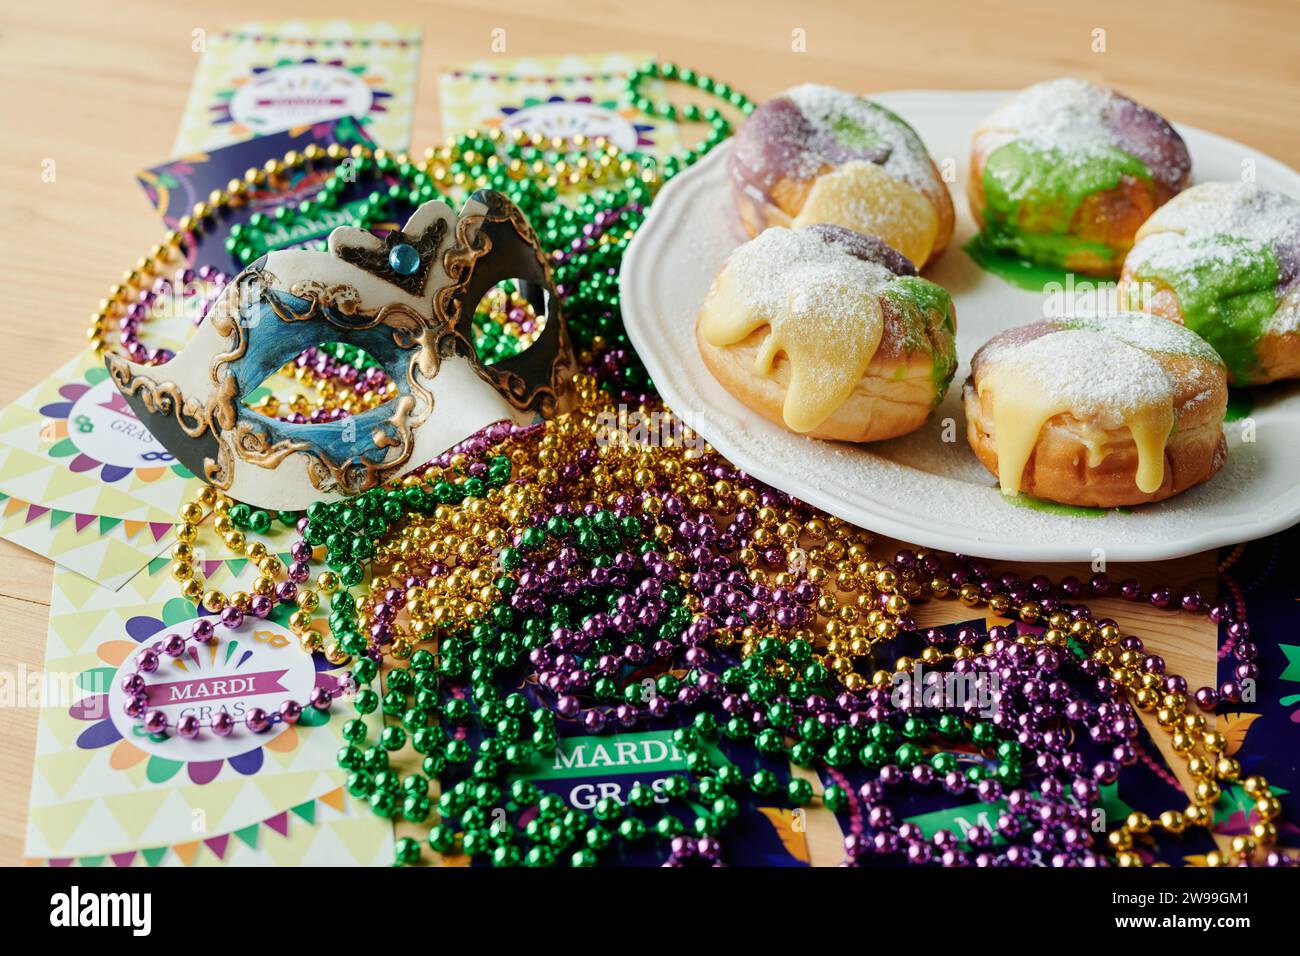 Gruppo di simboli del Mardi Gras come cartoline, maschera veneziana, perline colorate e appetitose ciambelle berlinesi fatte in casa sul tavolo Foto Stock